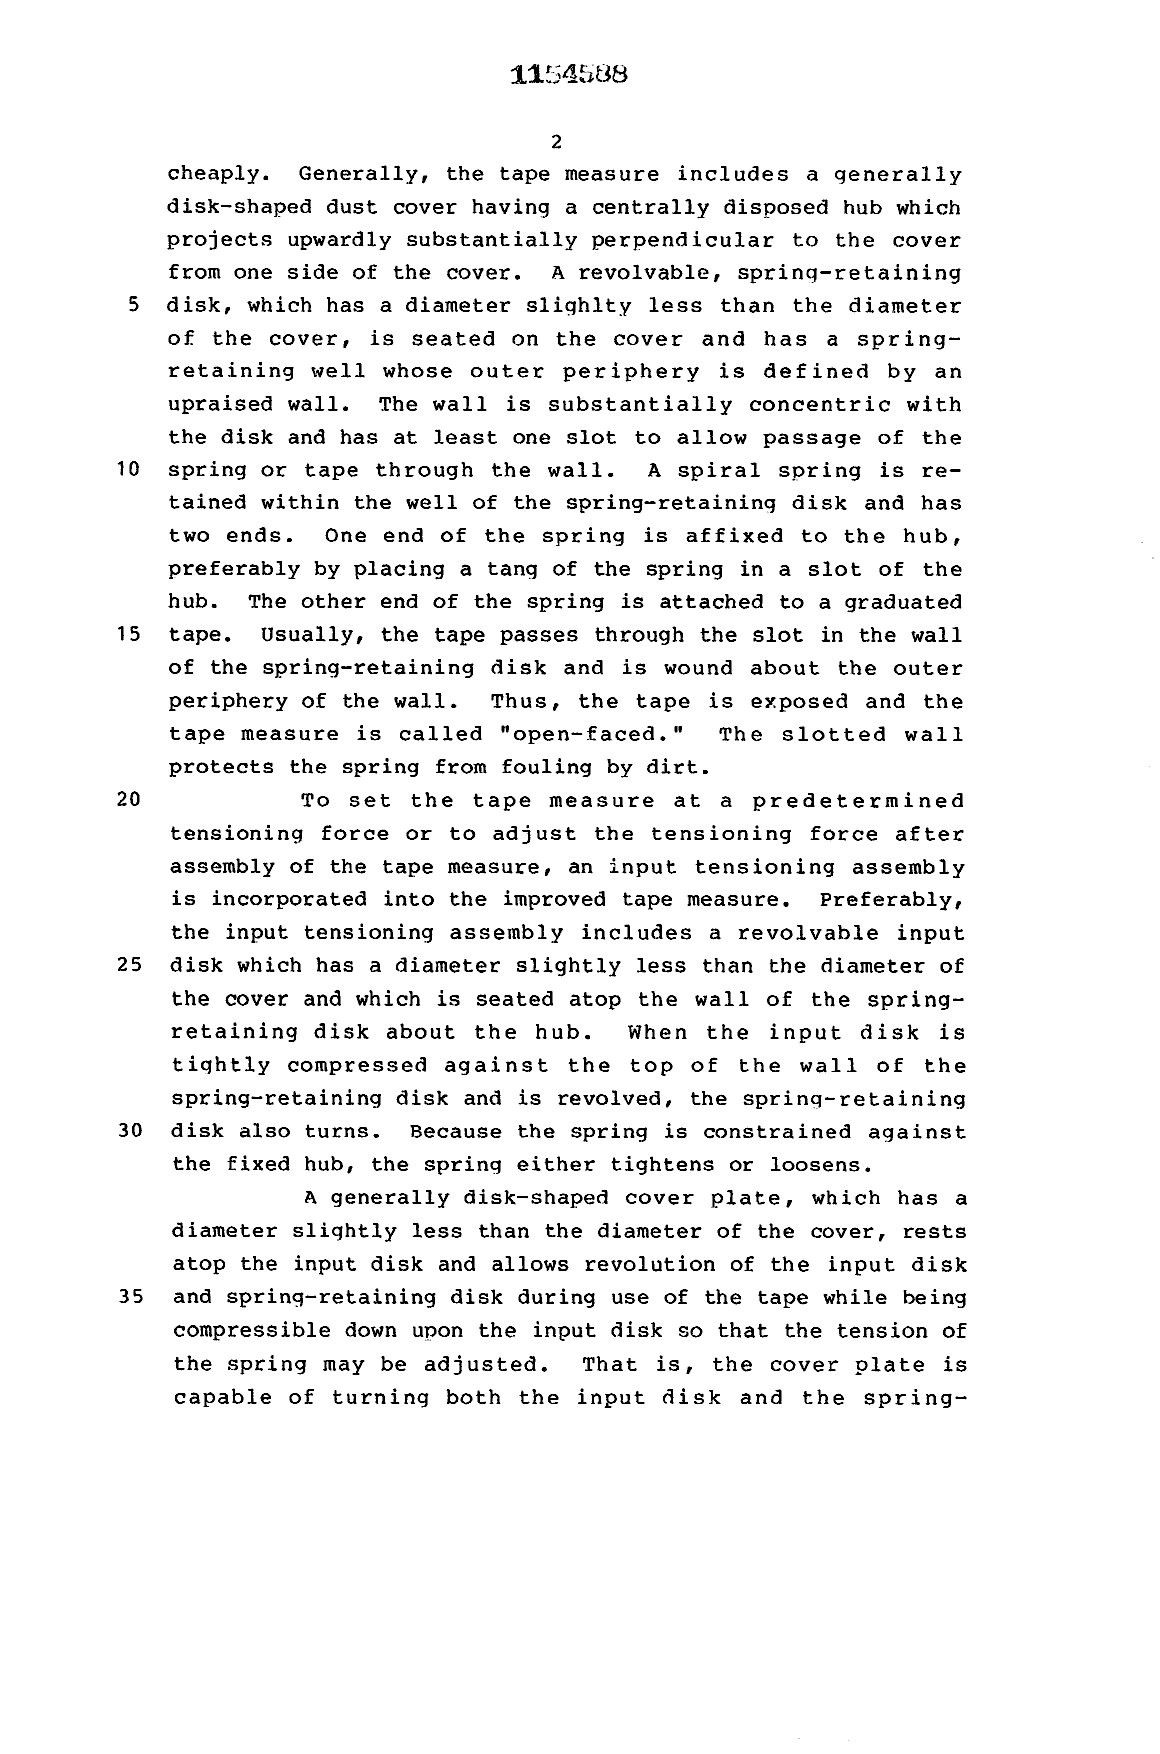 Canadian Patent Document 1154588. Description 19940115. Image 2 of 8